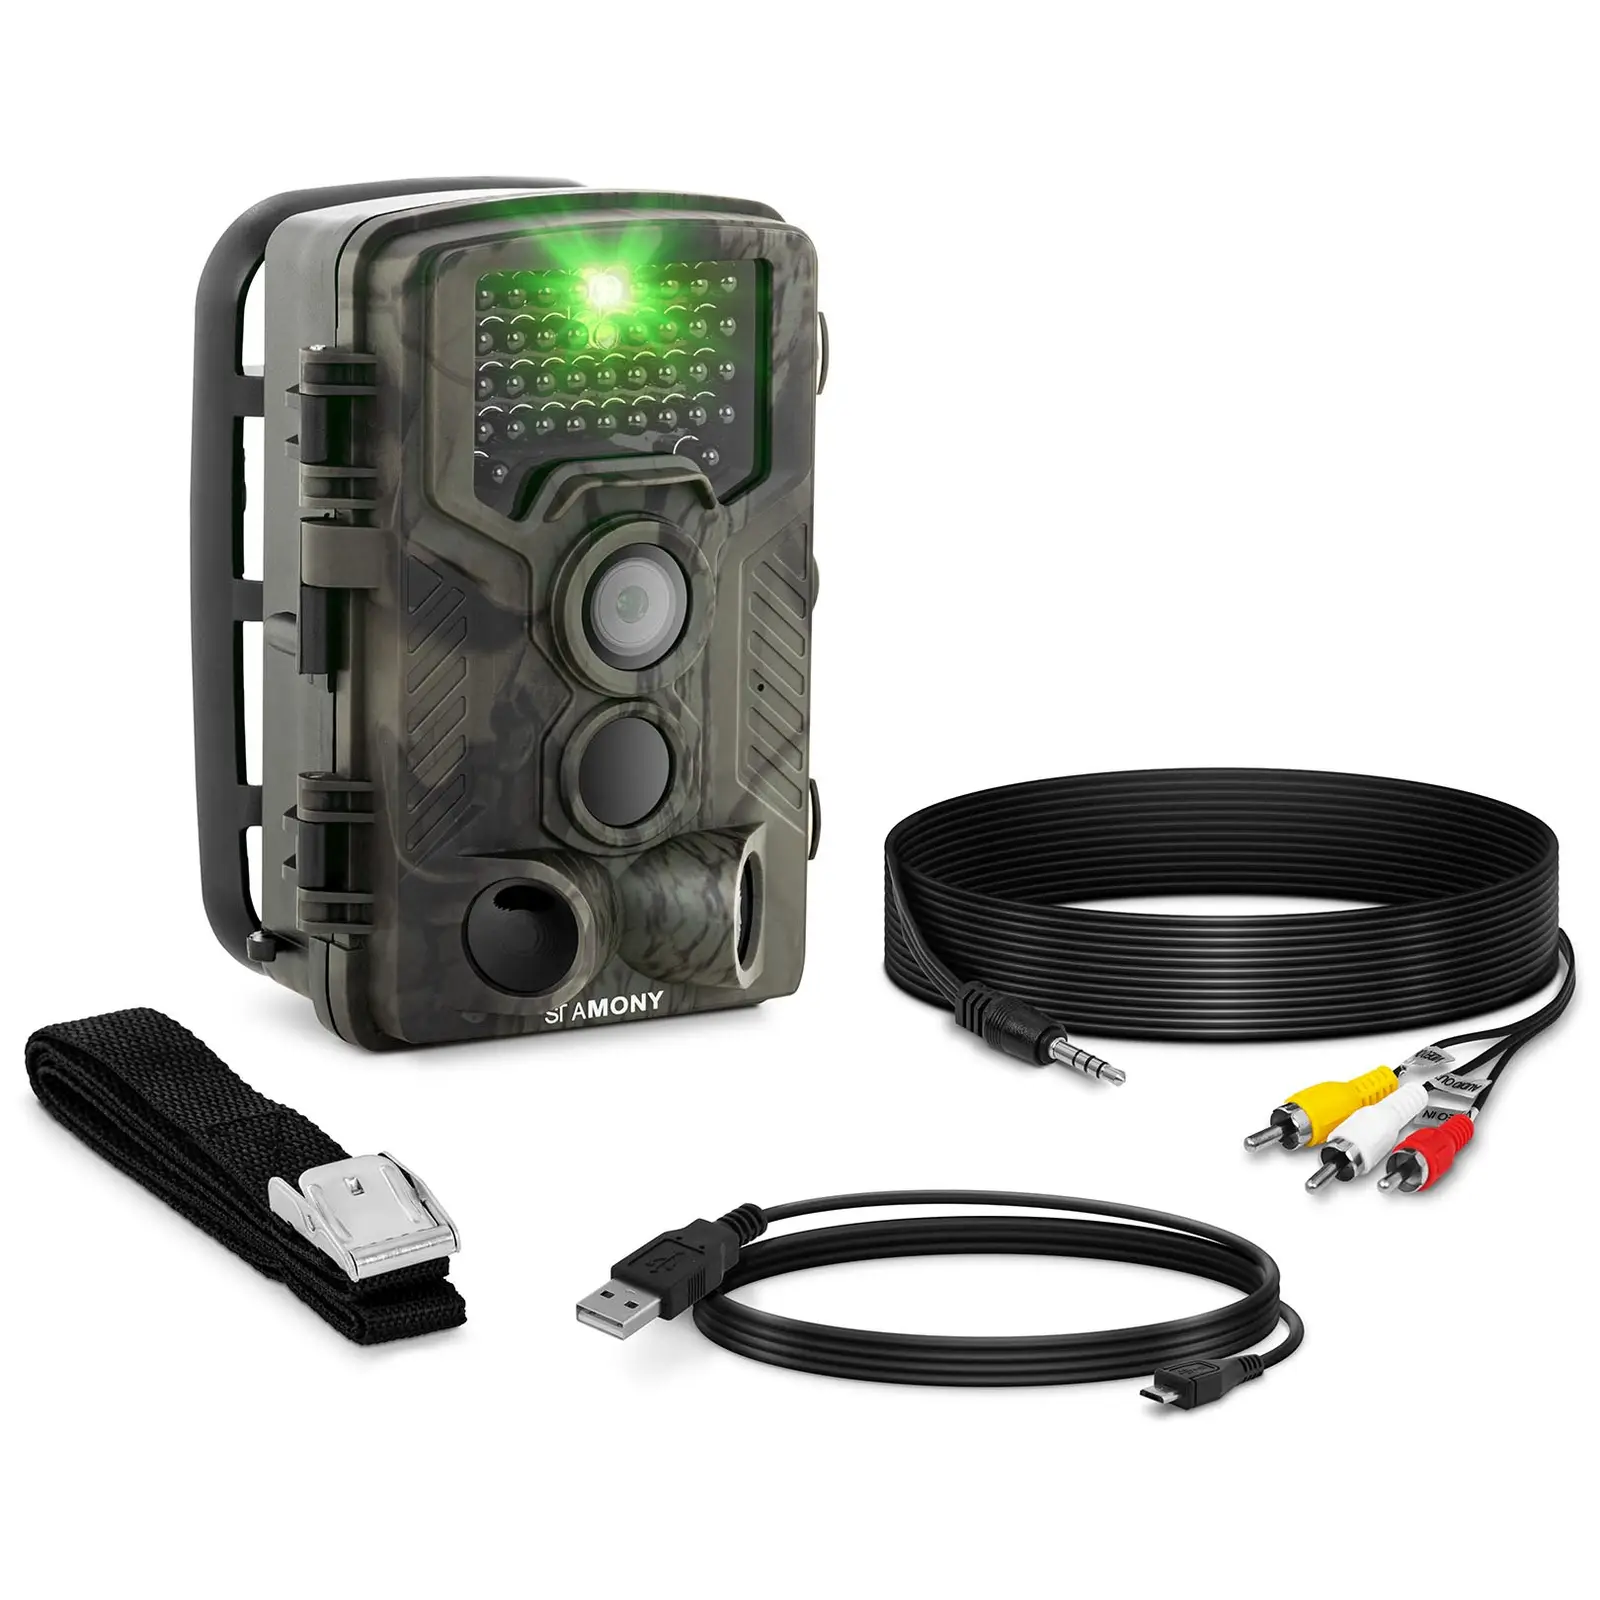 Åtelkamera - 8 MP - Full HD - 42 IR-LED - 20 m - 0,3 s